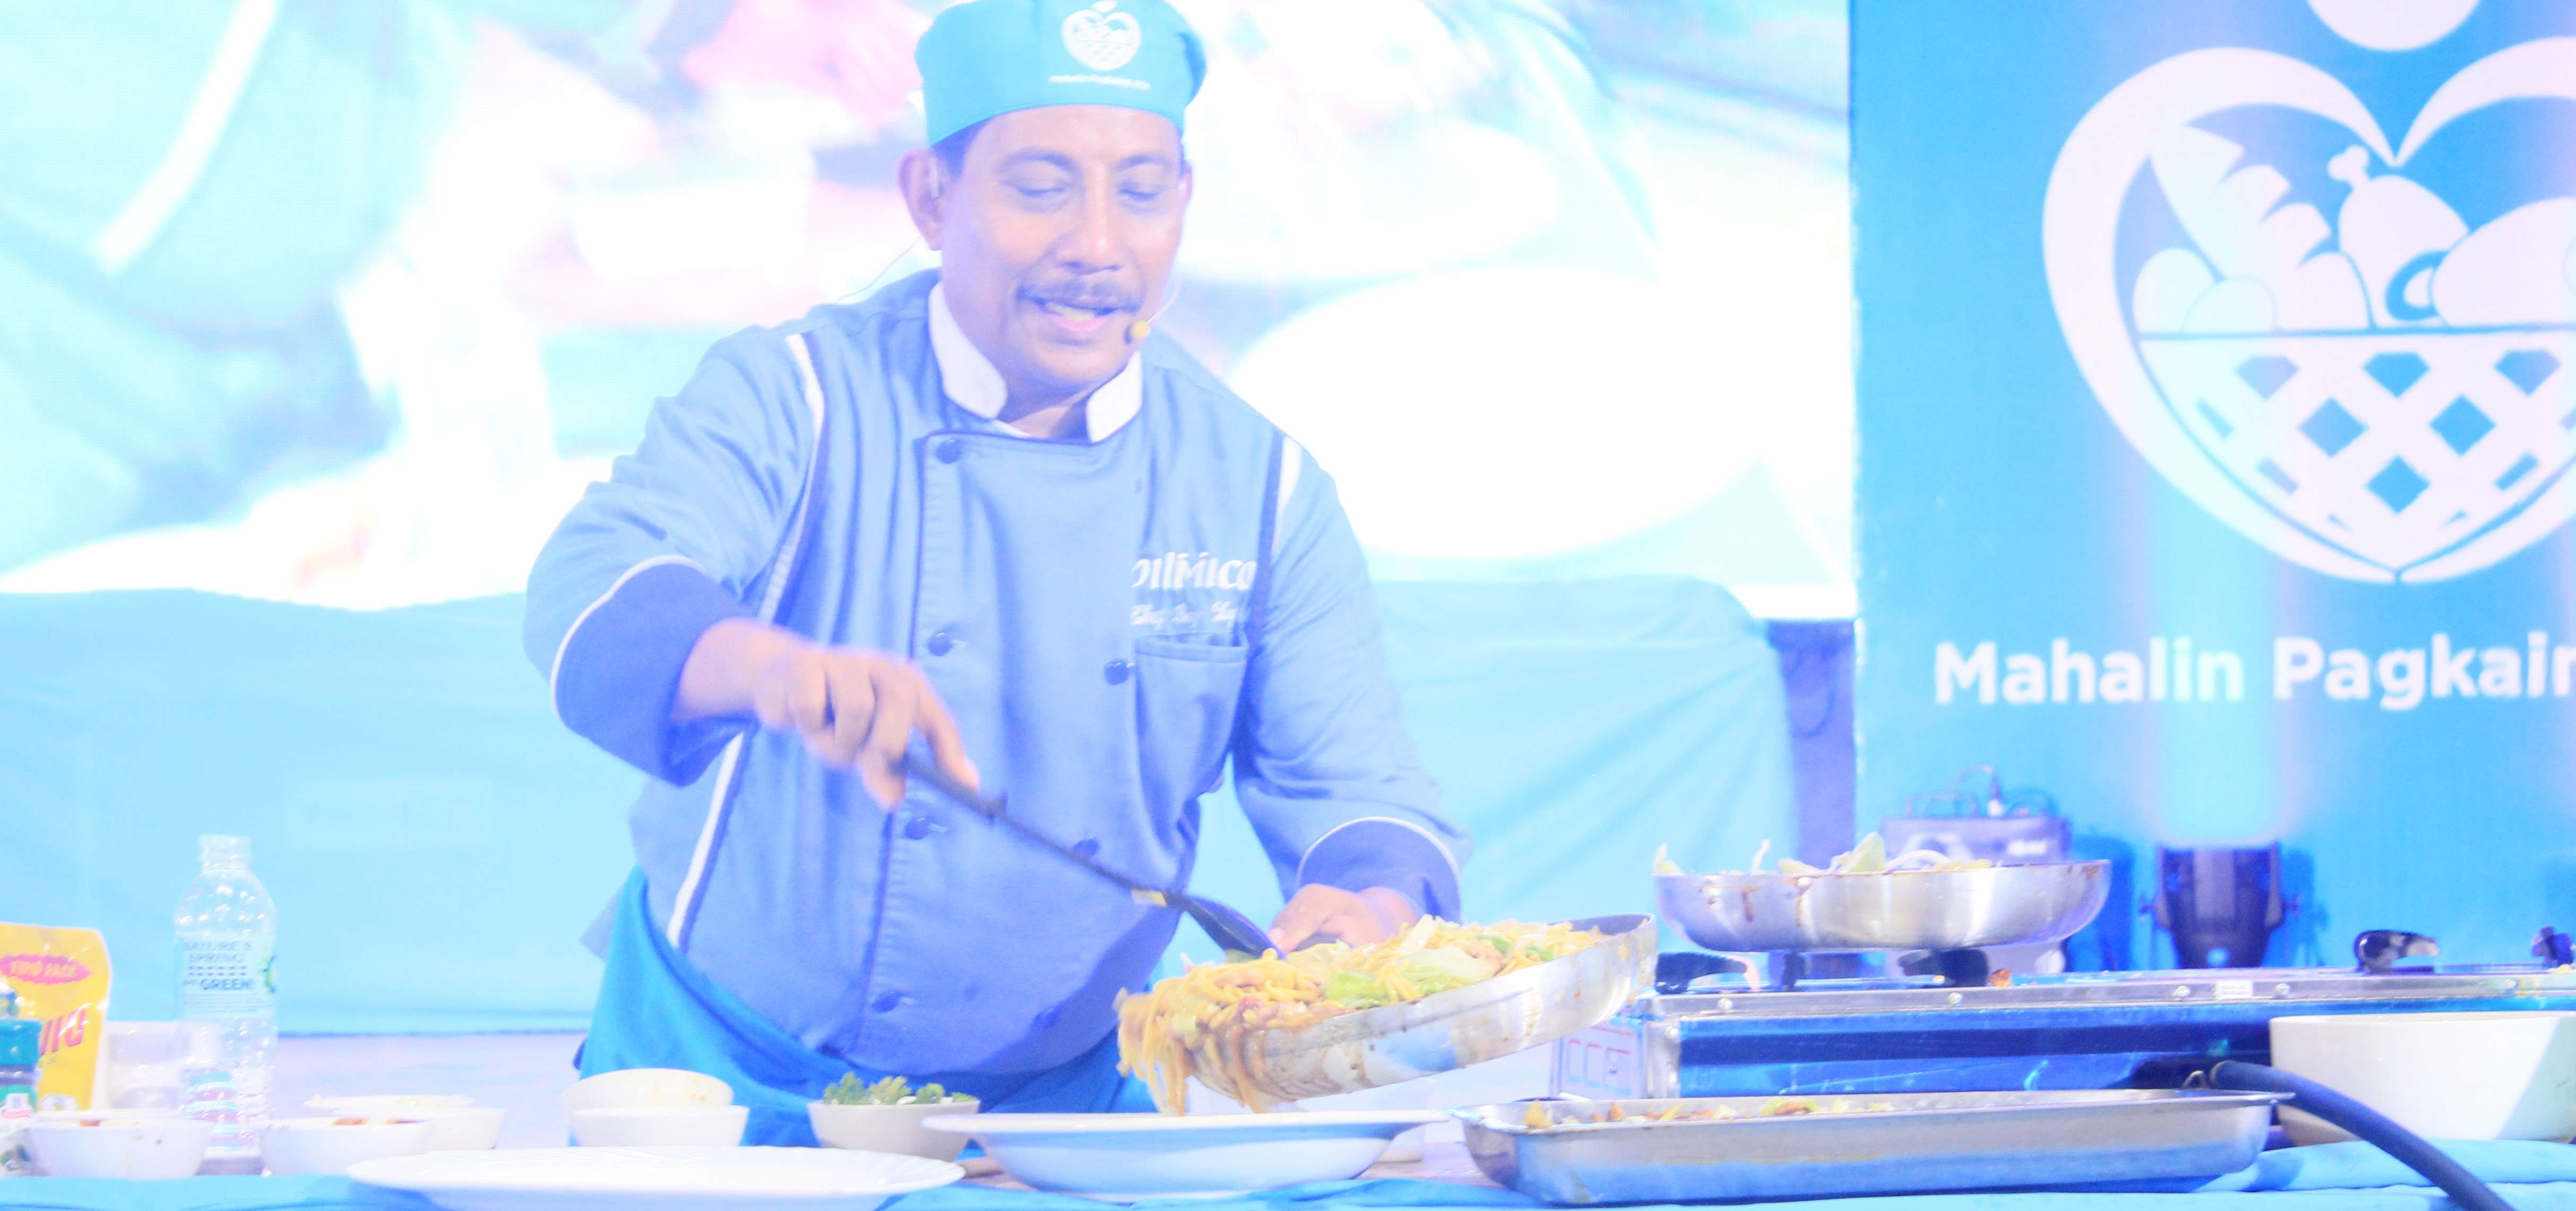 Cooking demo by Mahalin Pagkaing Atin Ambassador, Chef Boy Logro